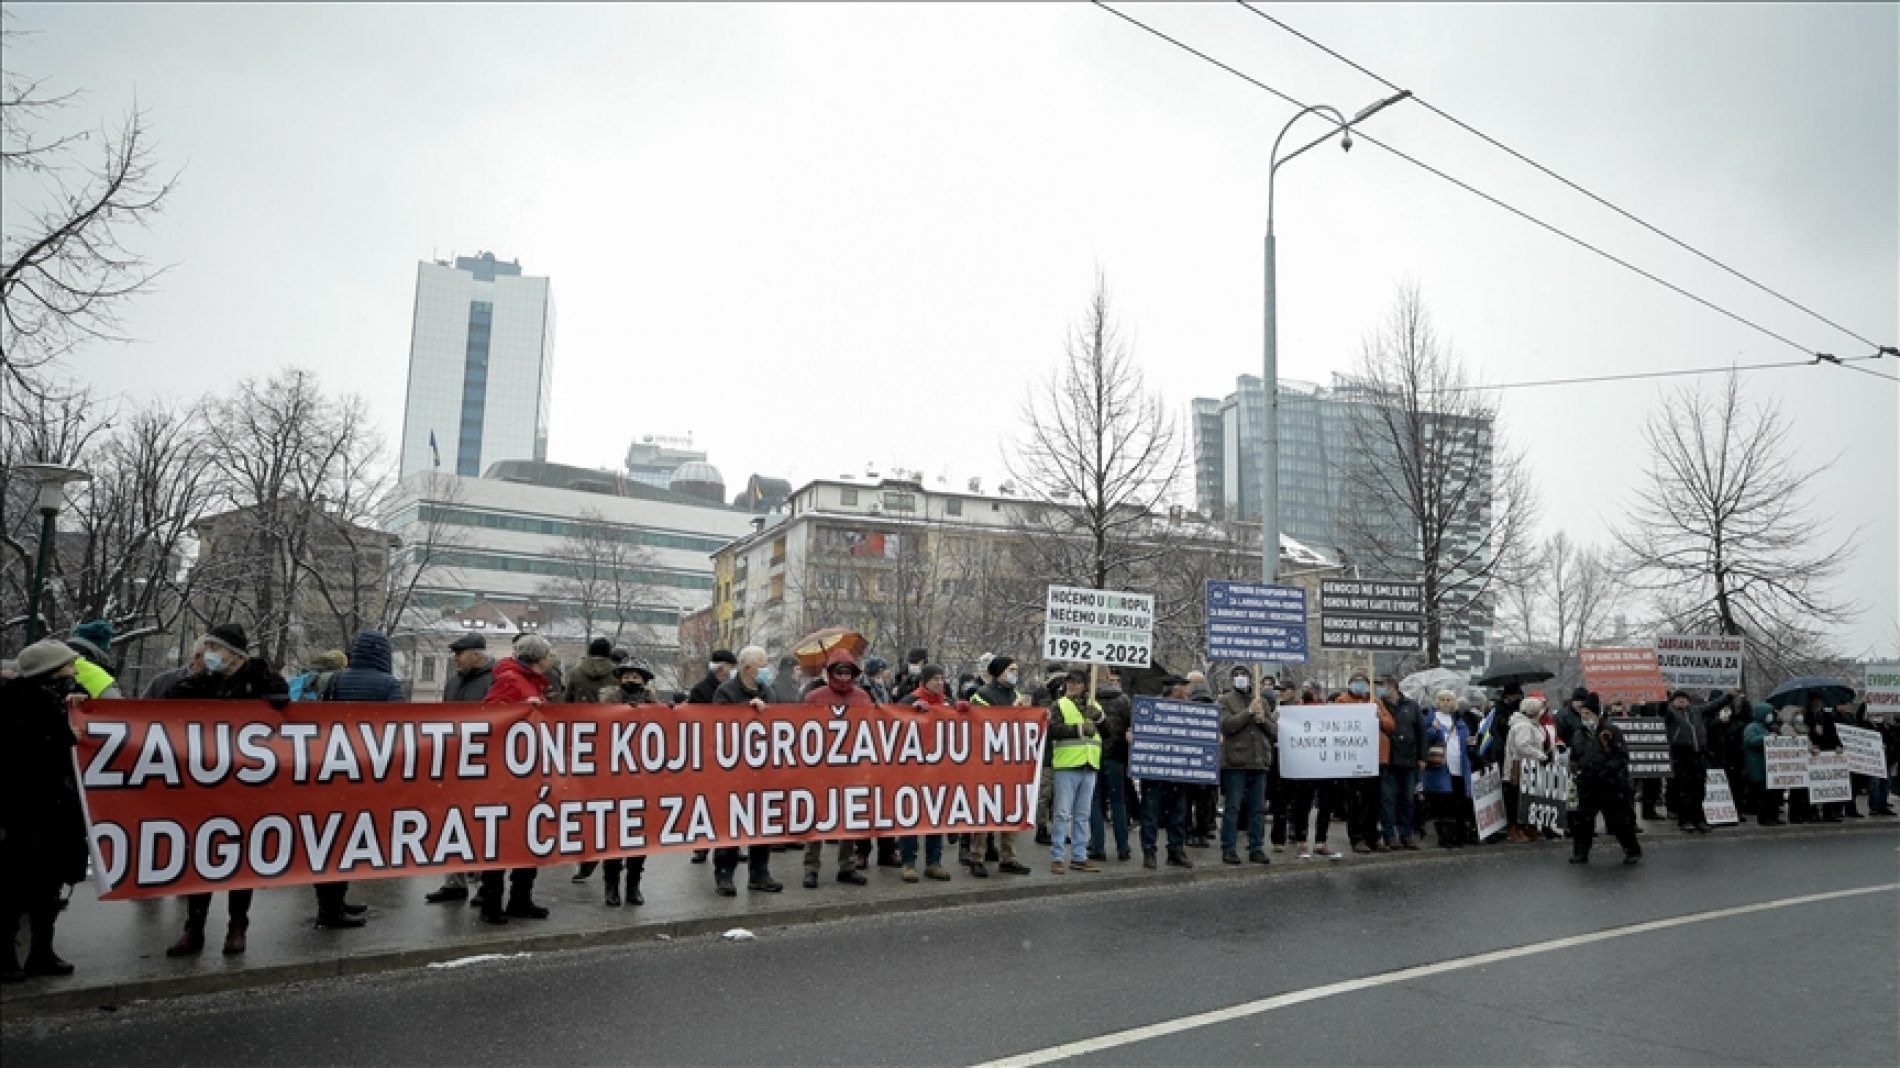 Protest ispred OHR-a: “Genocid ne smije biti osnova nove karte Evrope”